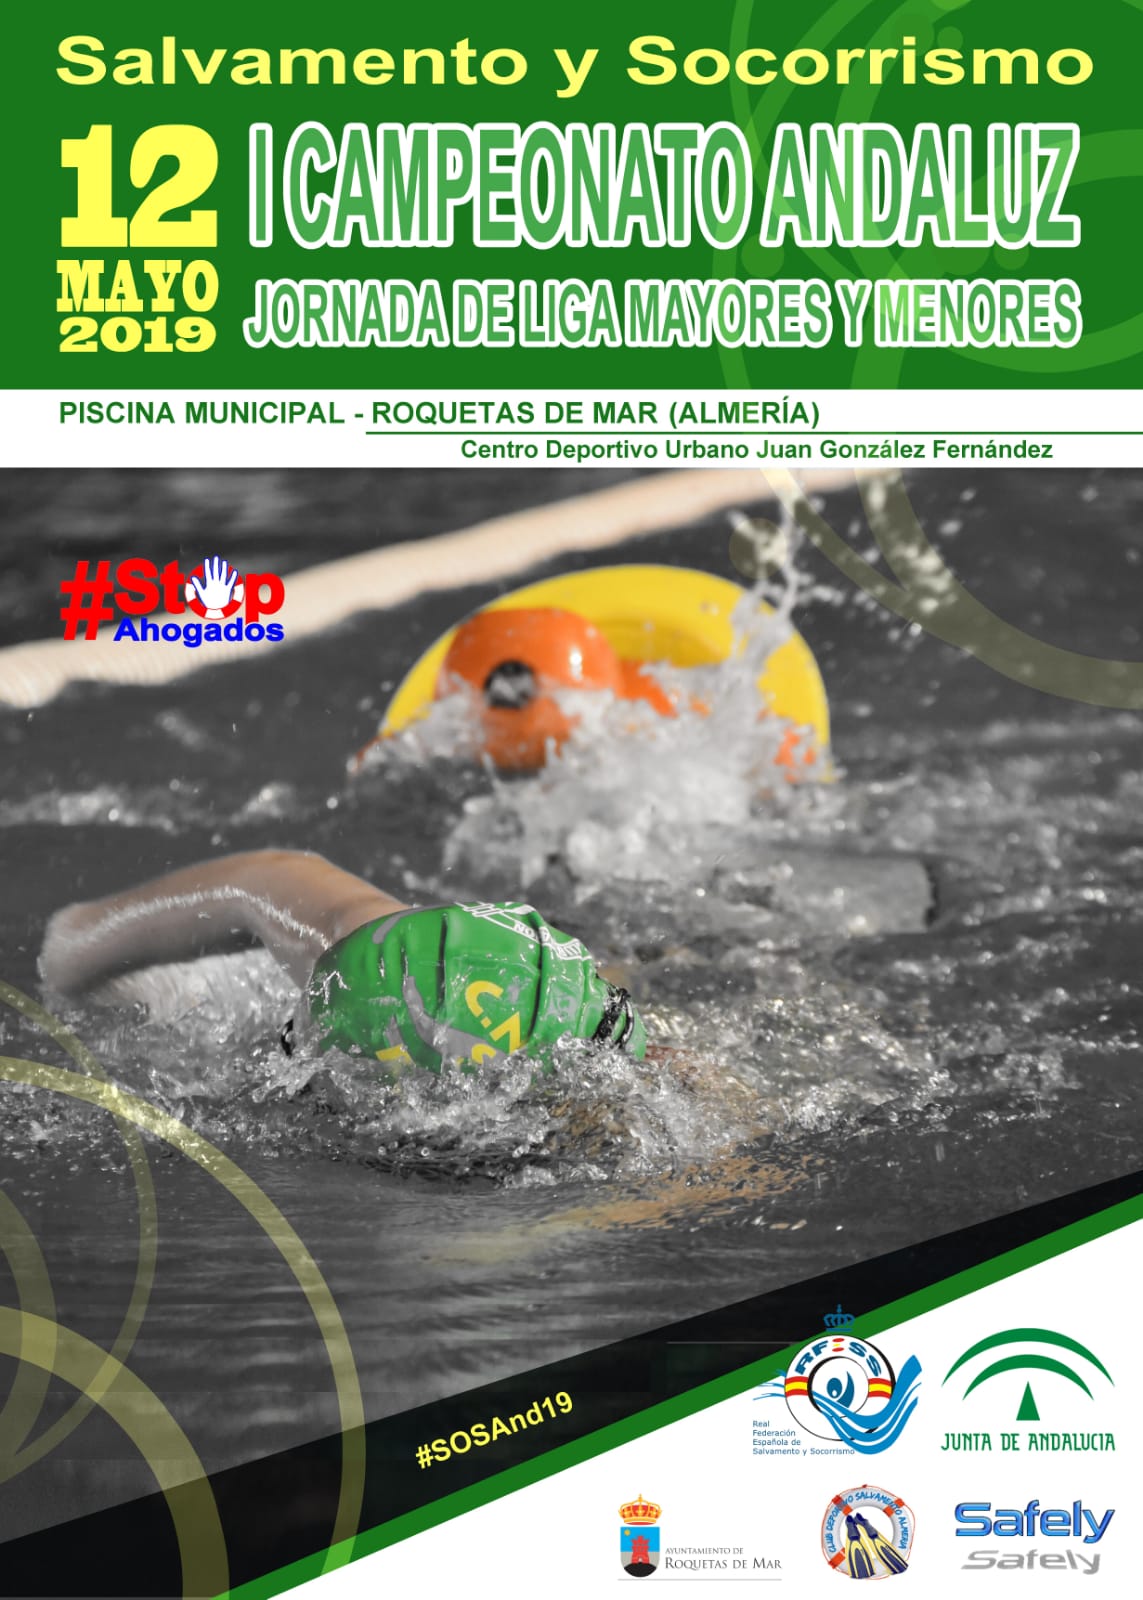 Campeonato Andaluz de Salvamento y Socorrismo, Roquetas de Mar (almería), 12 de mayo de 2019